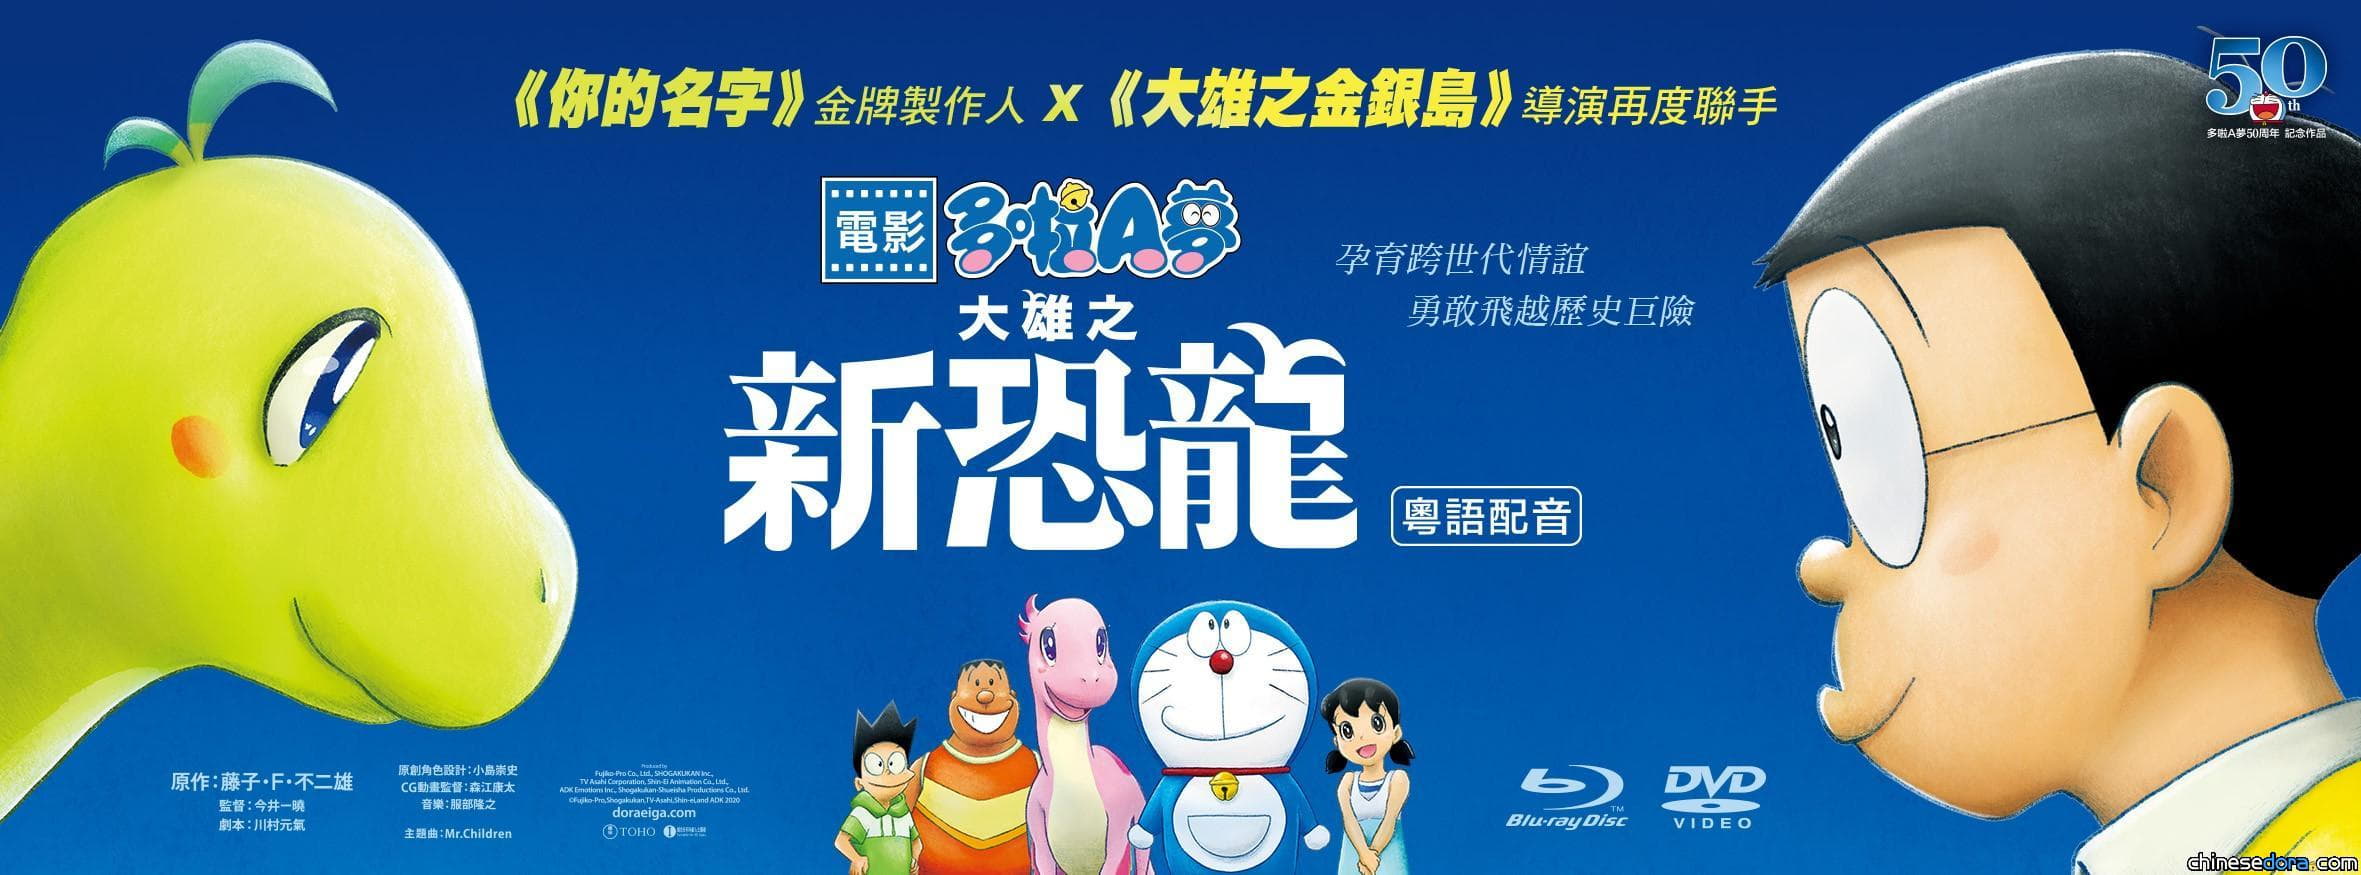 香港] 《電影多啦A夢：大雄之新恐龍》DVD、Blu-ray 改於3月23日正式